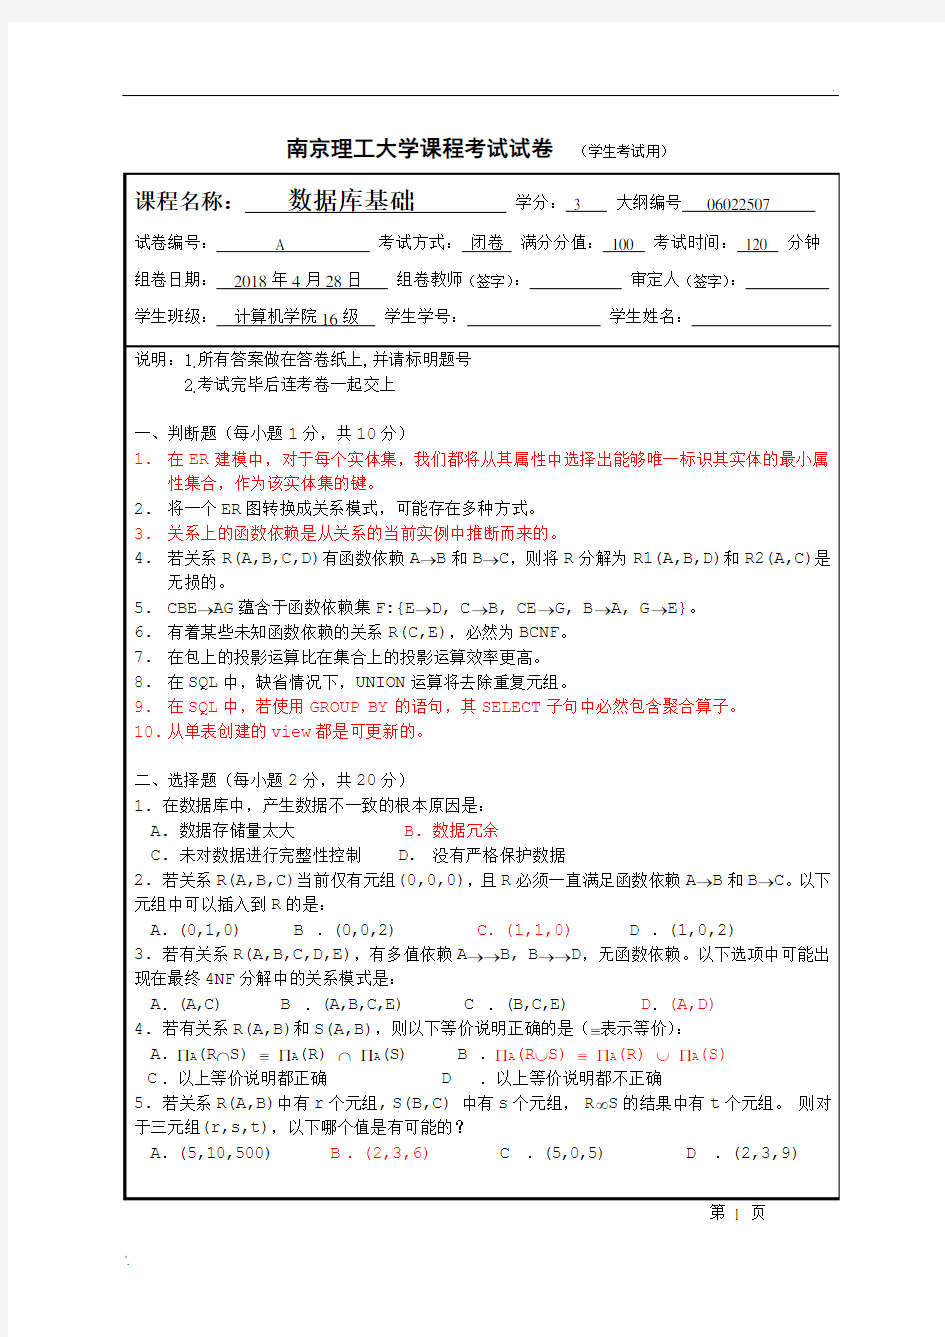 南京理工大学 数据库系统